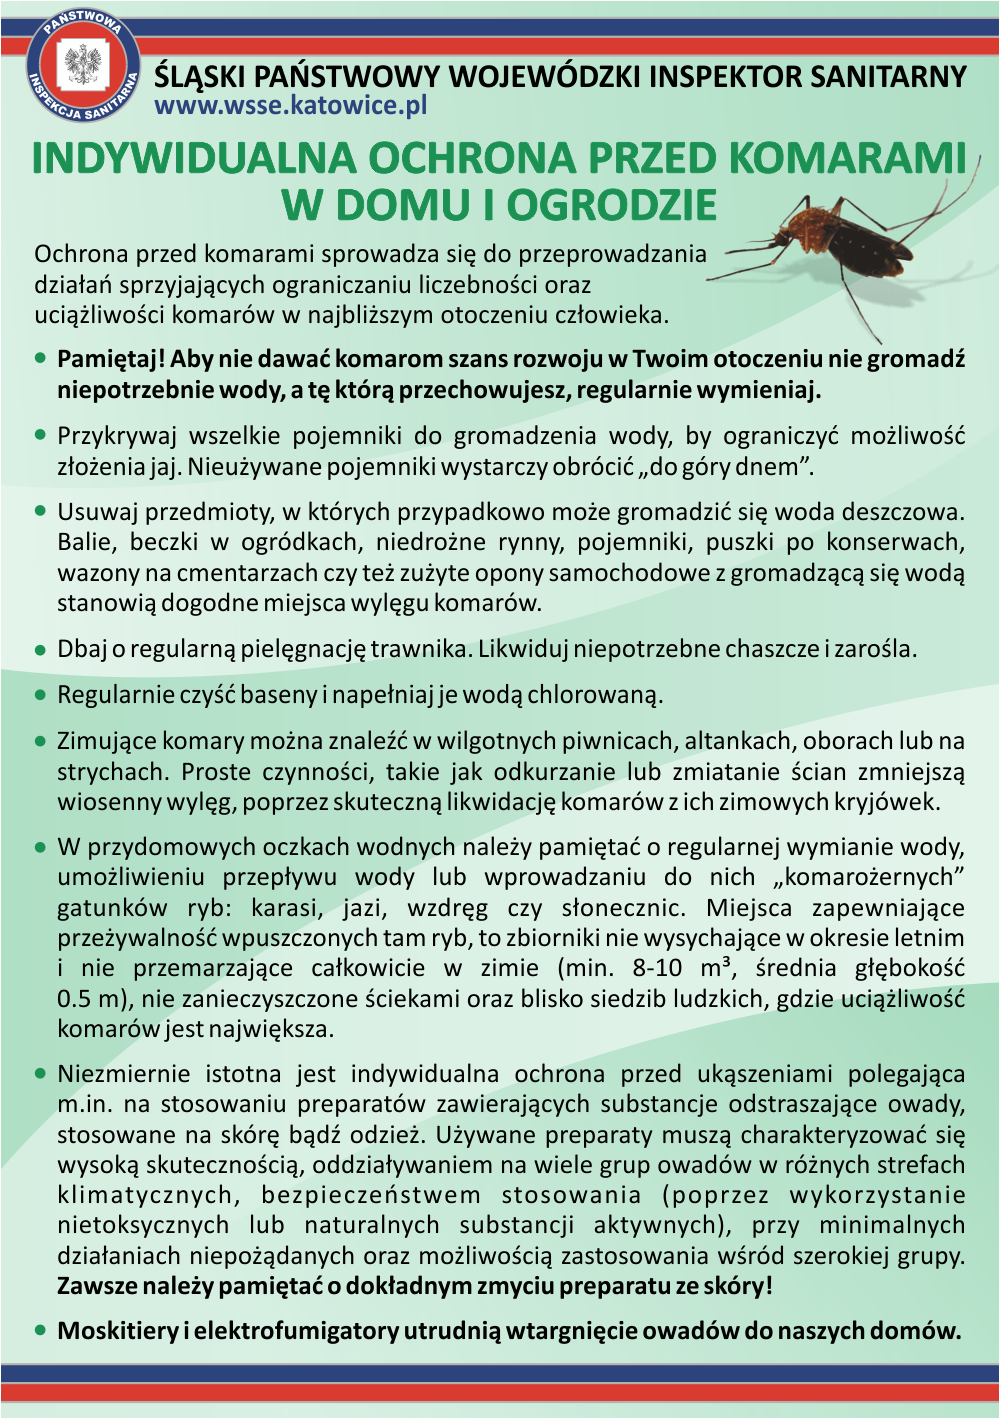 Plakat informujący o zachowaniu ostrożności w kontakcie z komarami.